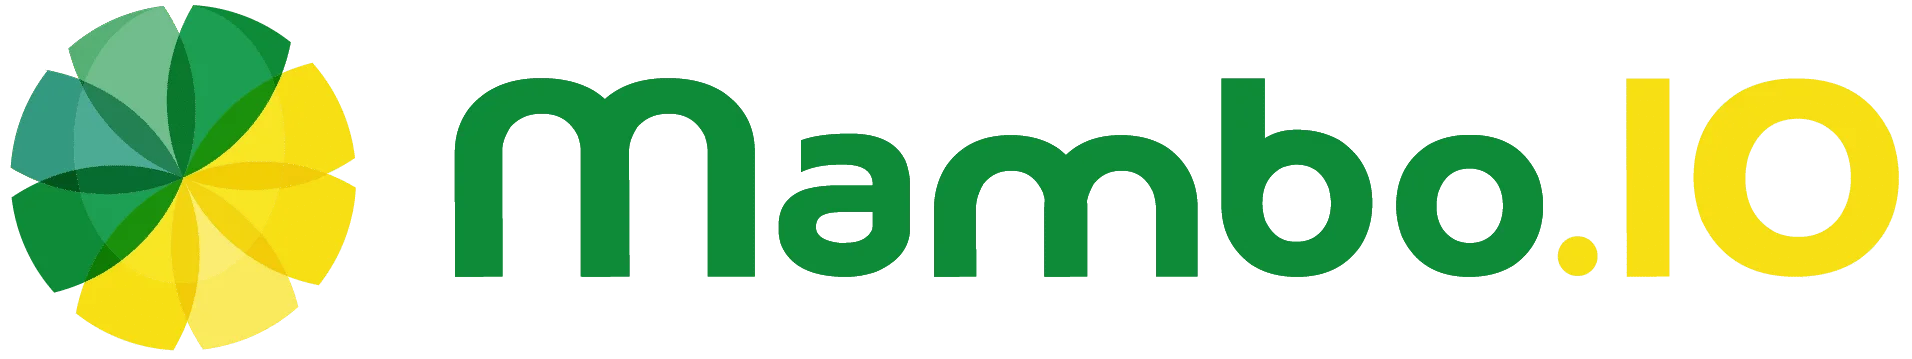 Best gamification companies: Mambo.io